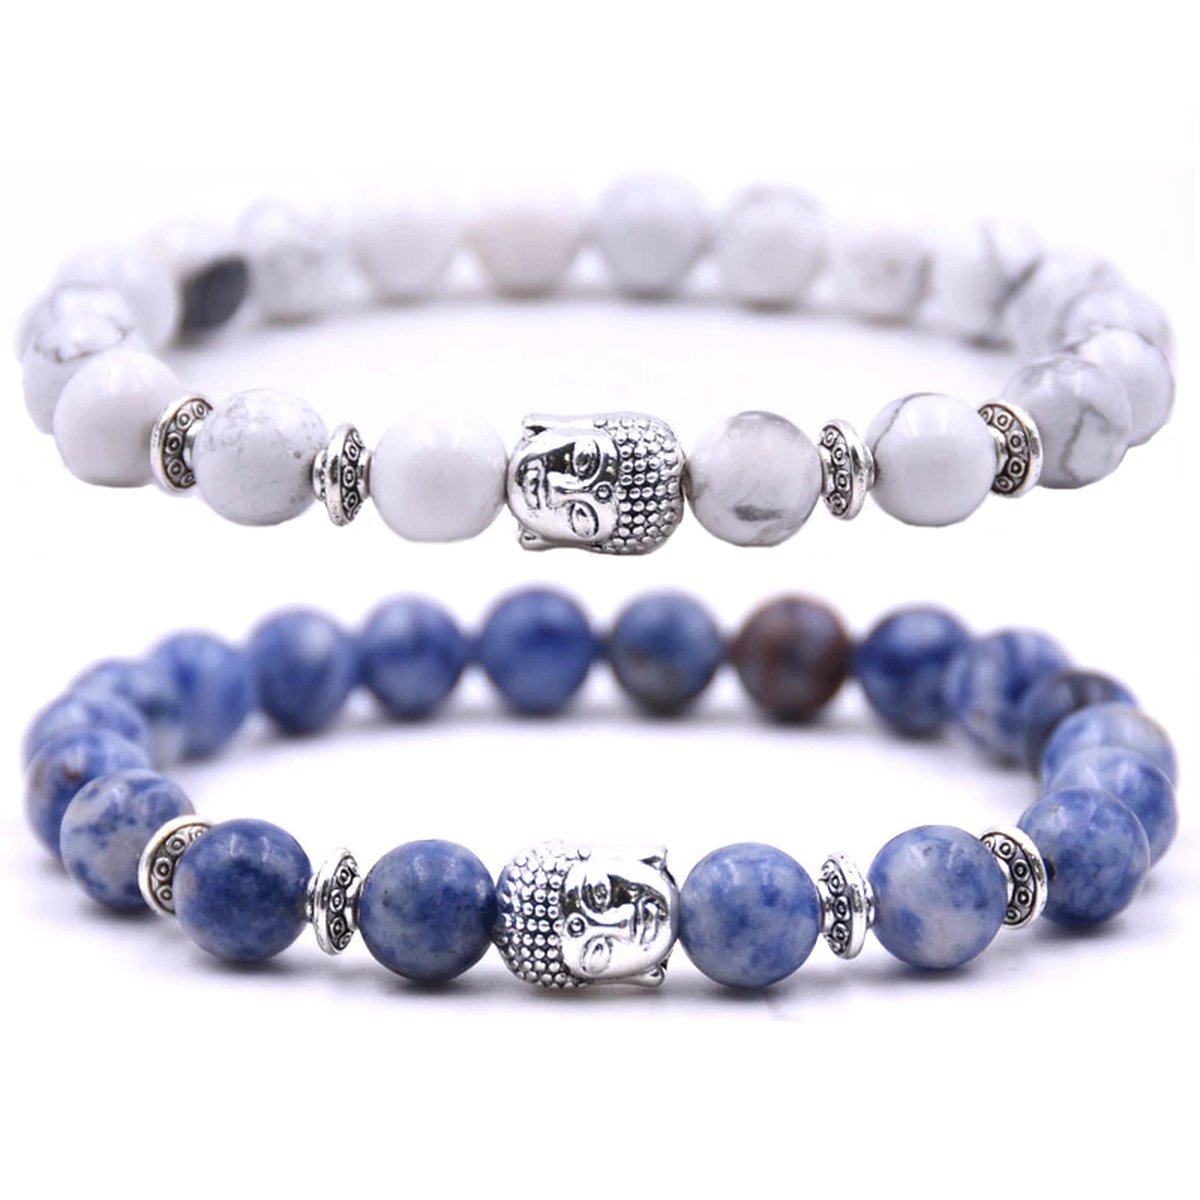 Kralen armband buddha / boedha bedel - Armband dames / heren / unisex - Natuursteen kralen bandje - Elastiek 19 cm - 8mm stenen - Armbandenset (2 stuks) - Wit marmer & blauw